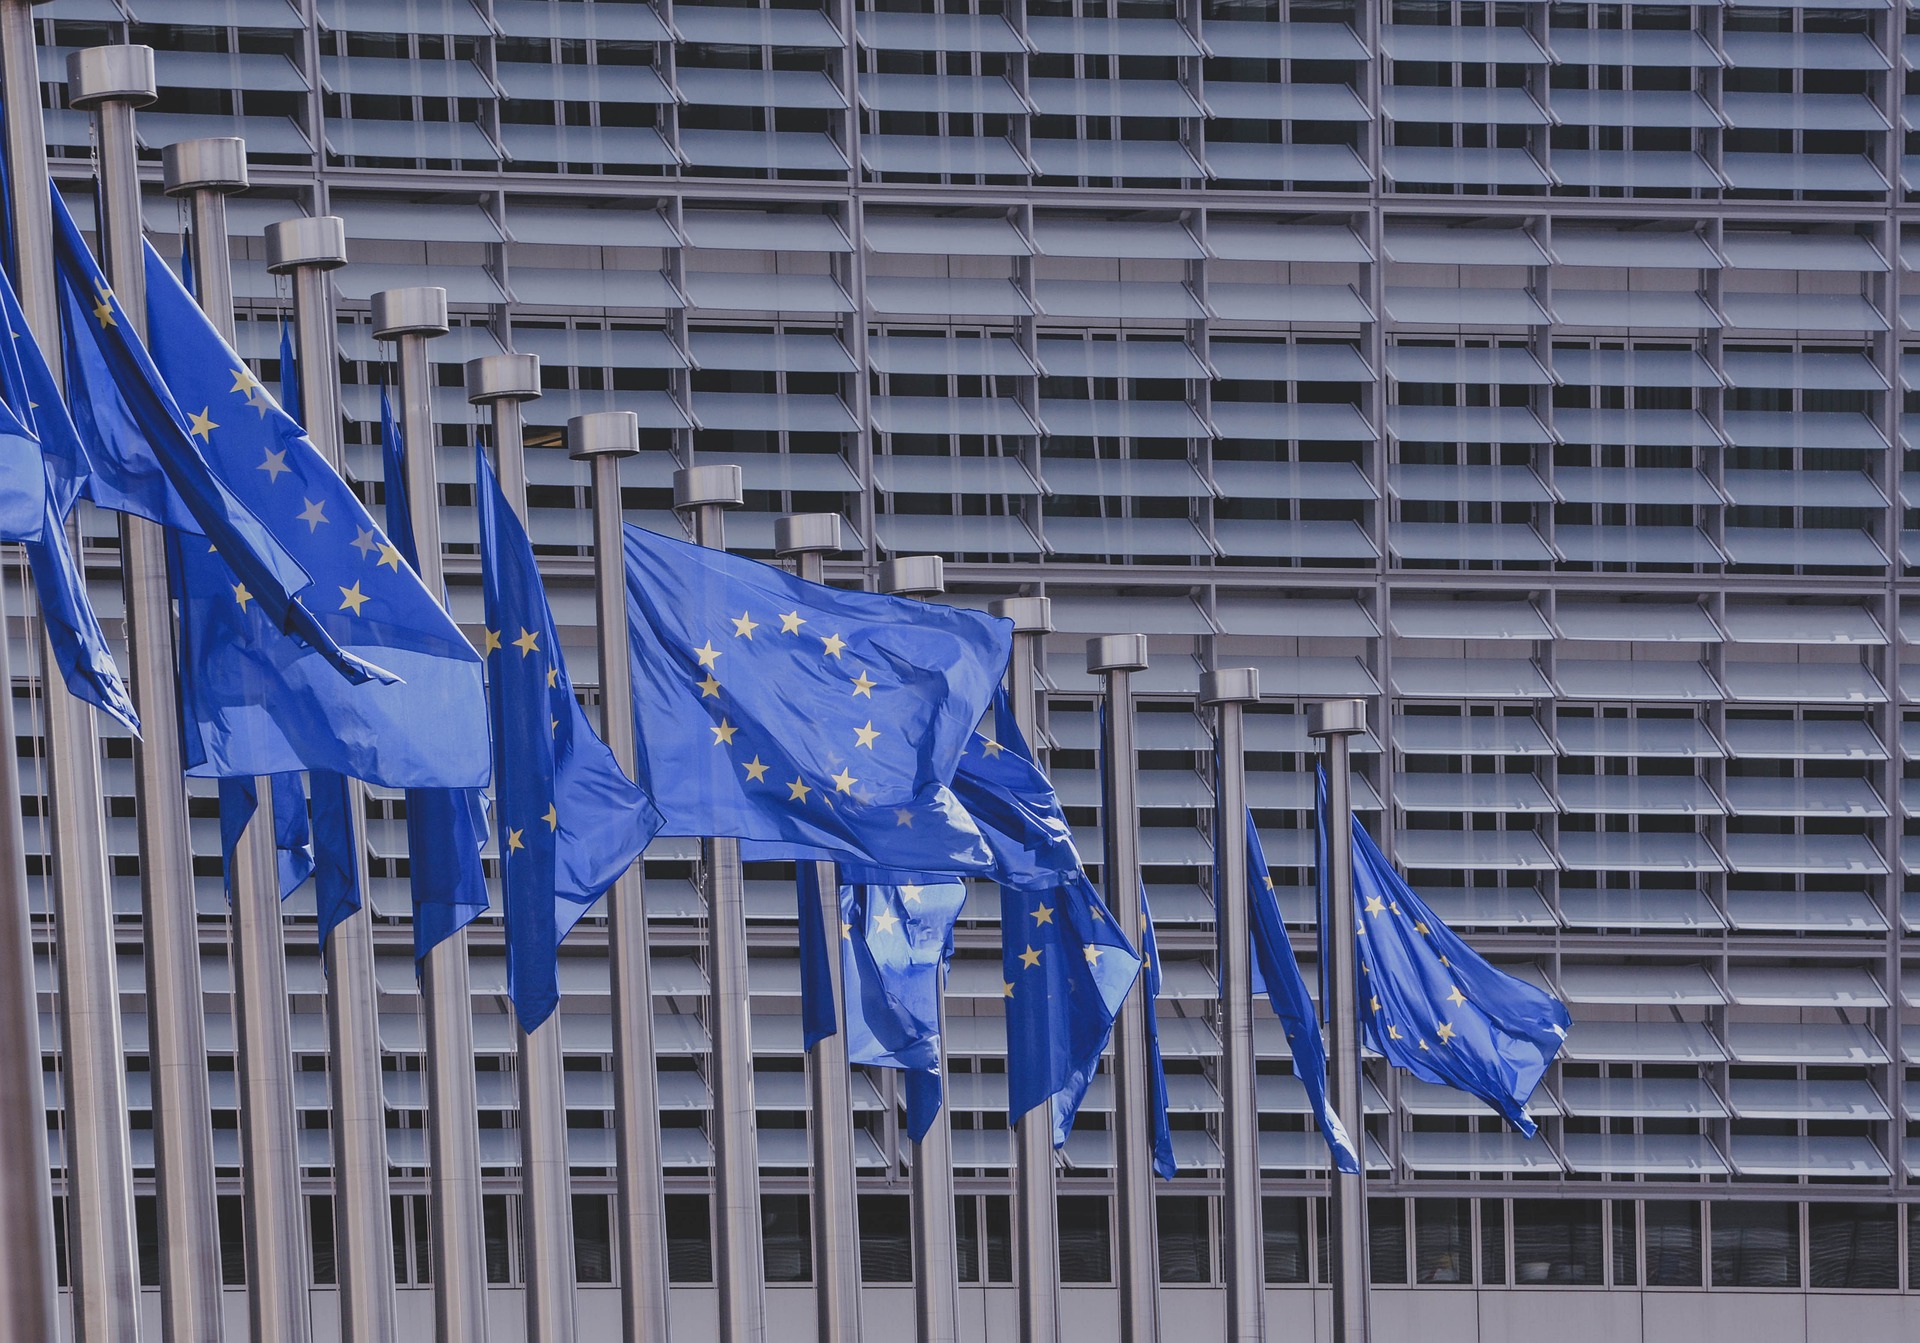 Tizenegy párt gyűjtötte össze az EP-induláshoz szükséges aláírásokat